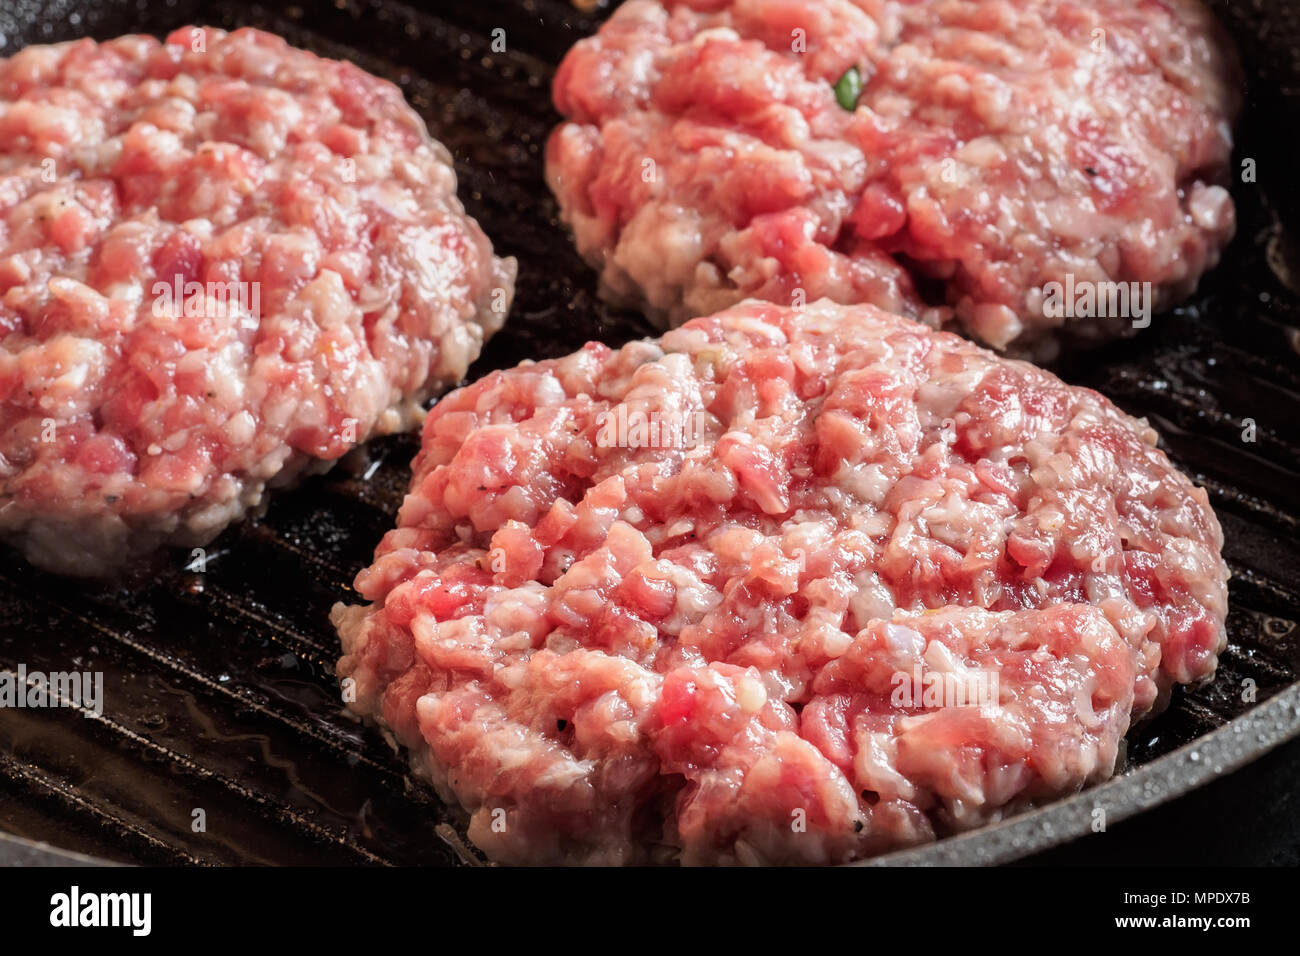 Schnitzel Steaks vom Grill Pfanne Mixe von Hackfleisch Hackfleisch/Faschiertes Rind- und Schweinefleisch zum kochen Grill Steaks kebabs Frittiergut Stockfoto